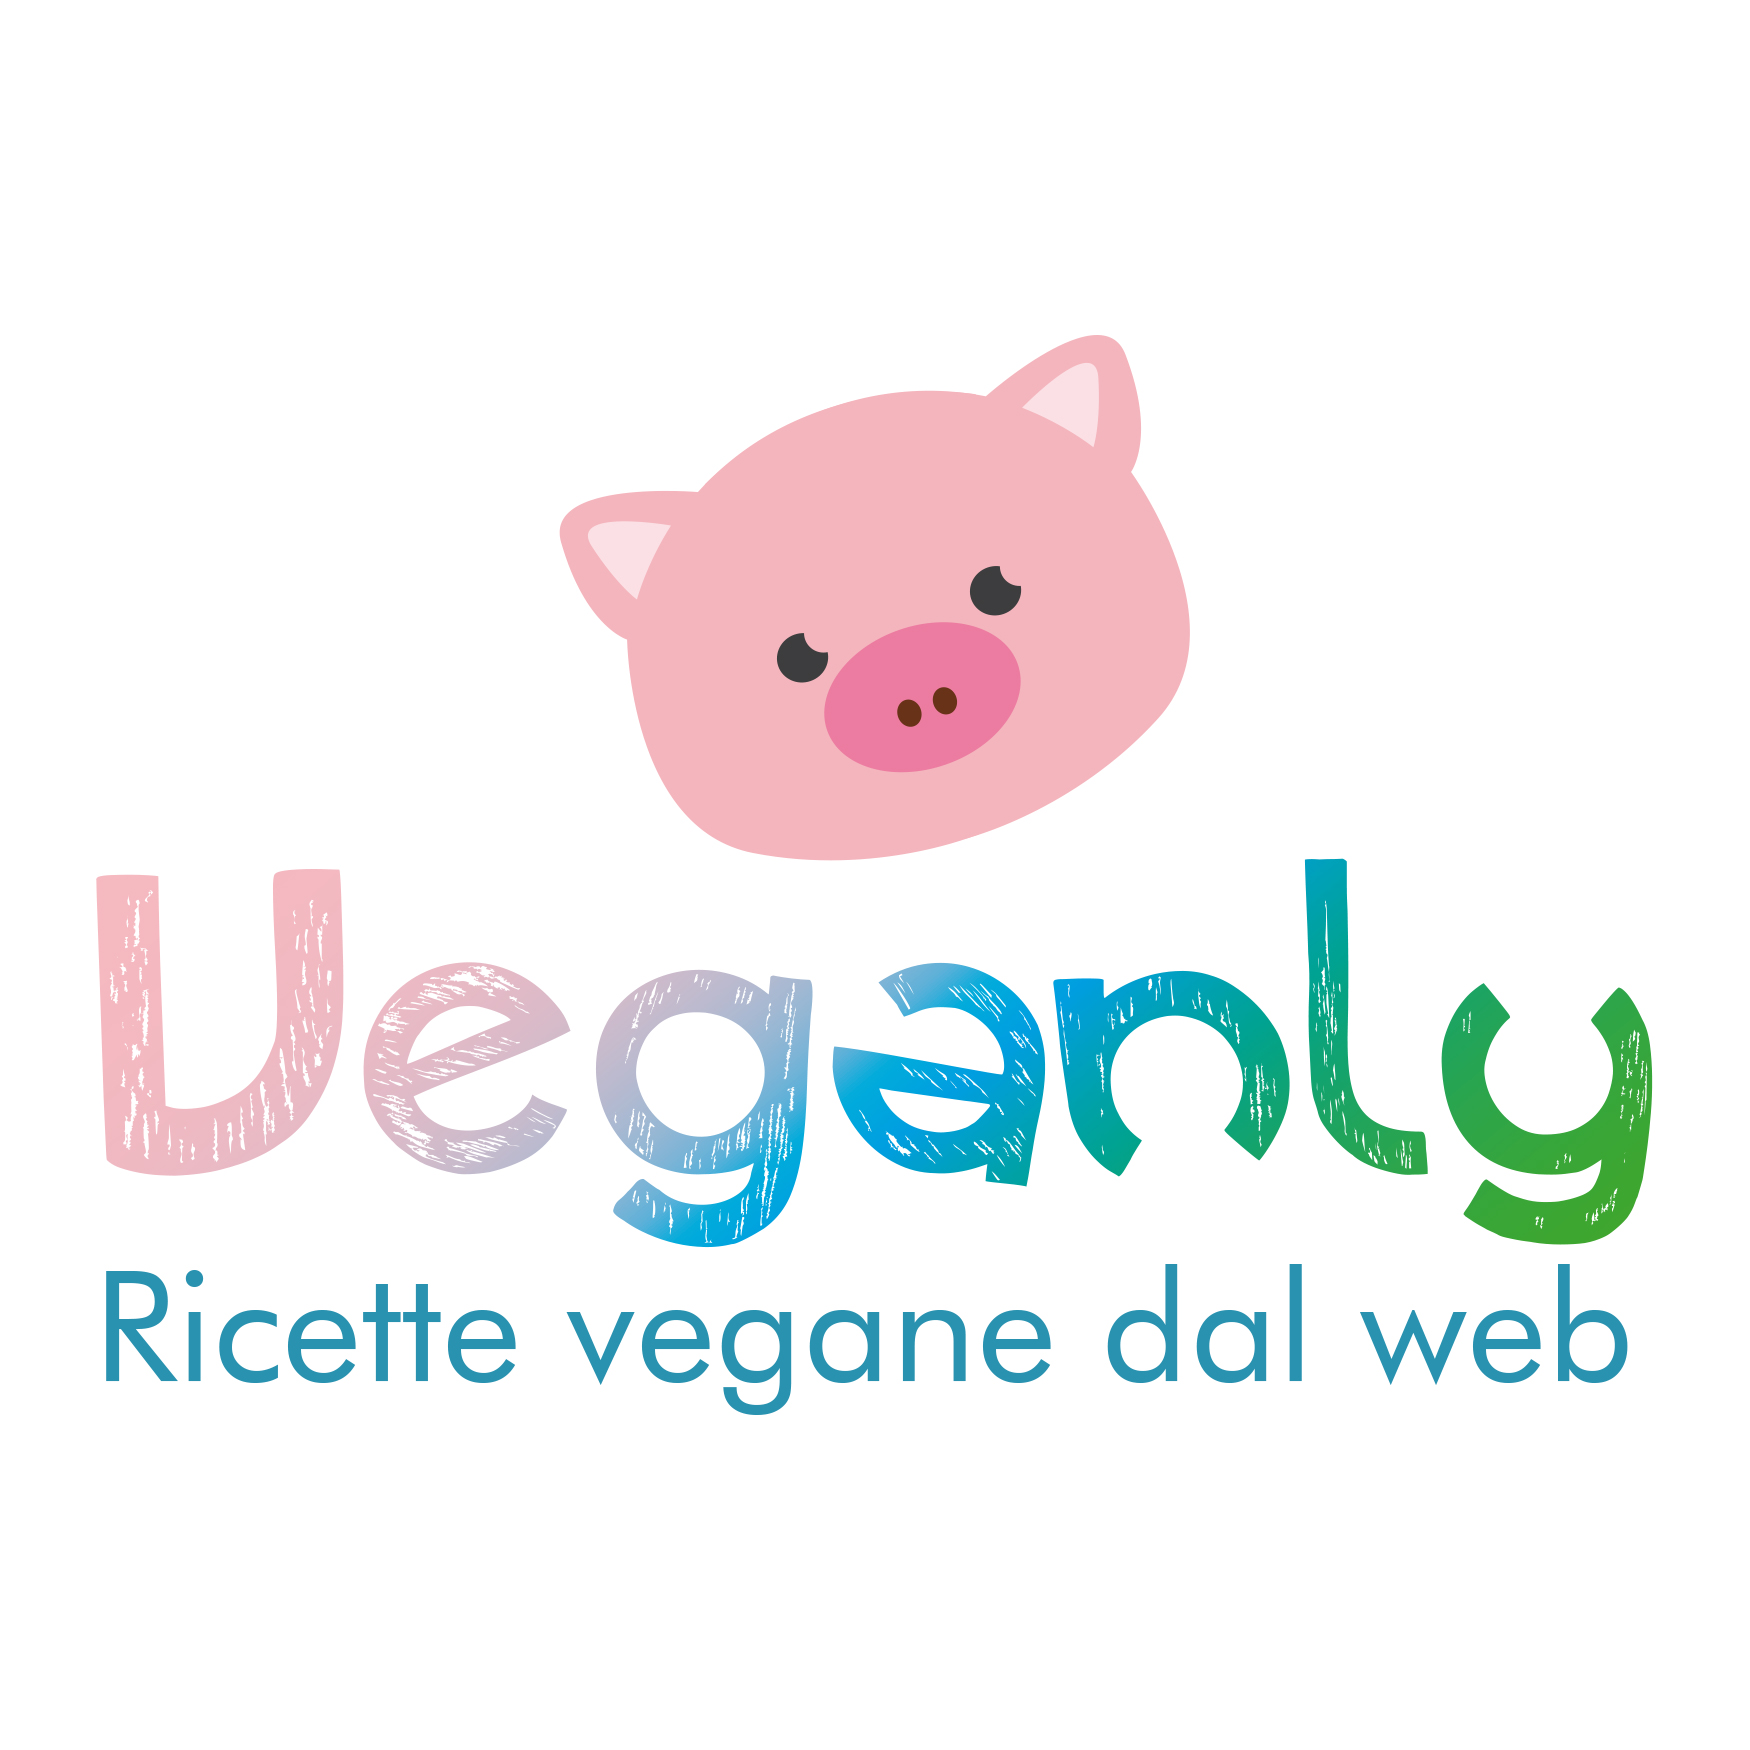 Ricette vegane con riso rosso | Veganly.it - Ricette vegane dal web